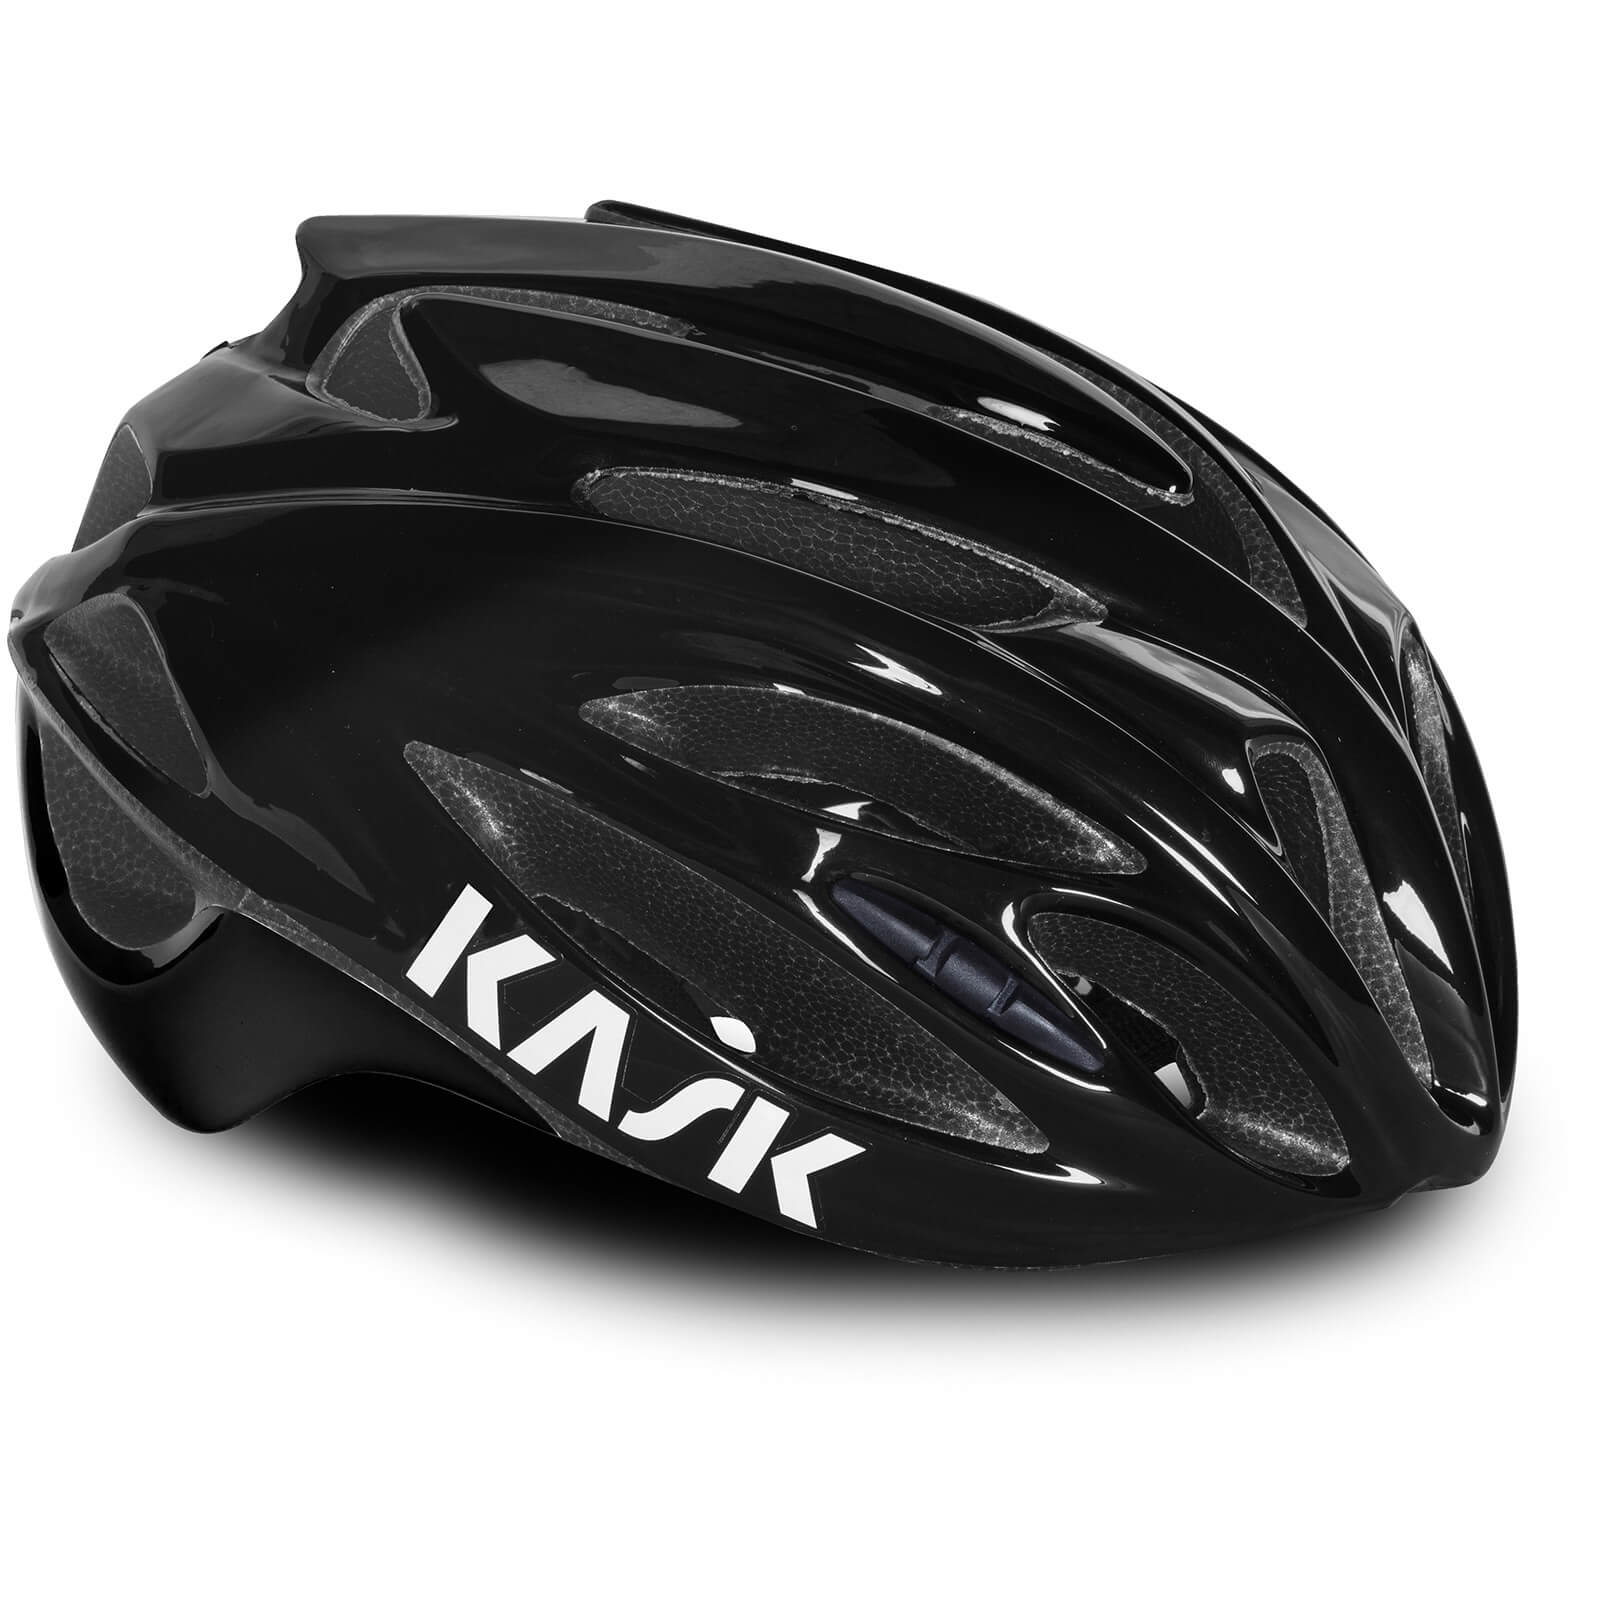 Kask Rapido Road Helmet - M - BLACK/BLACK